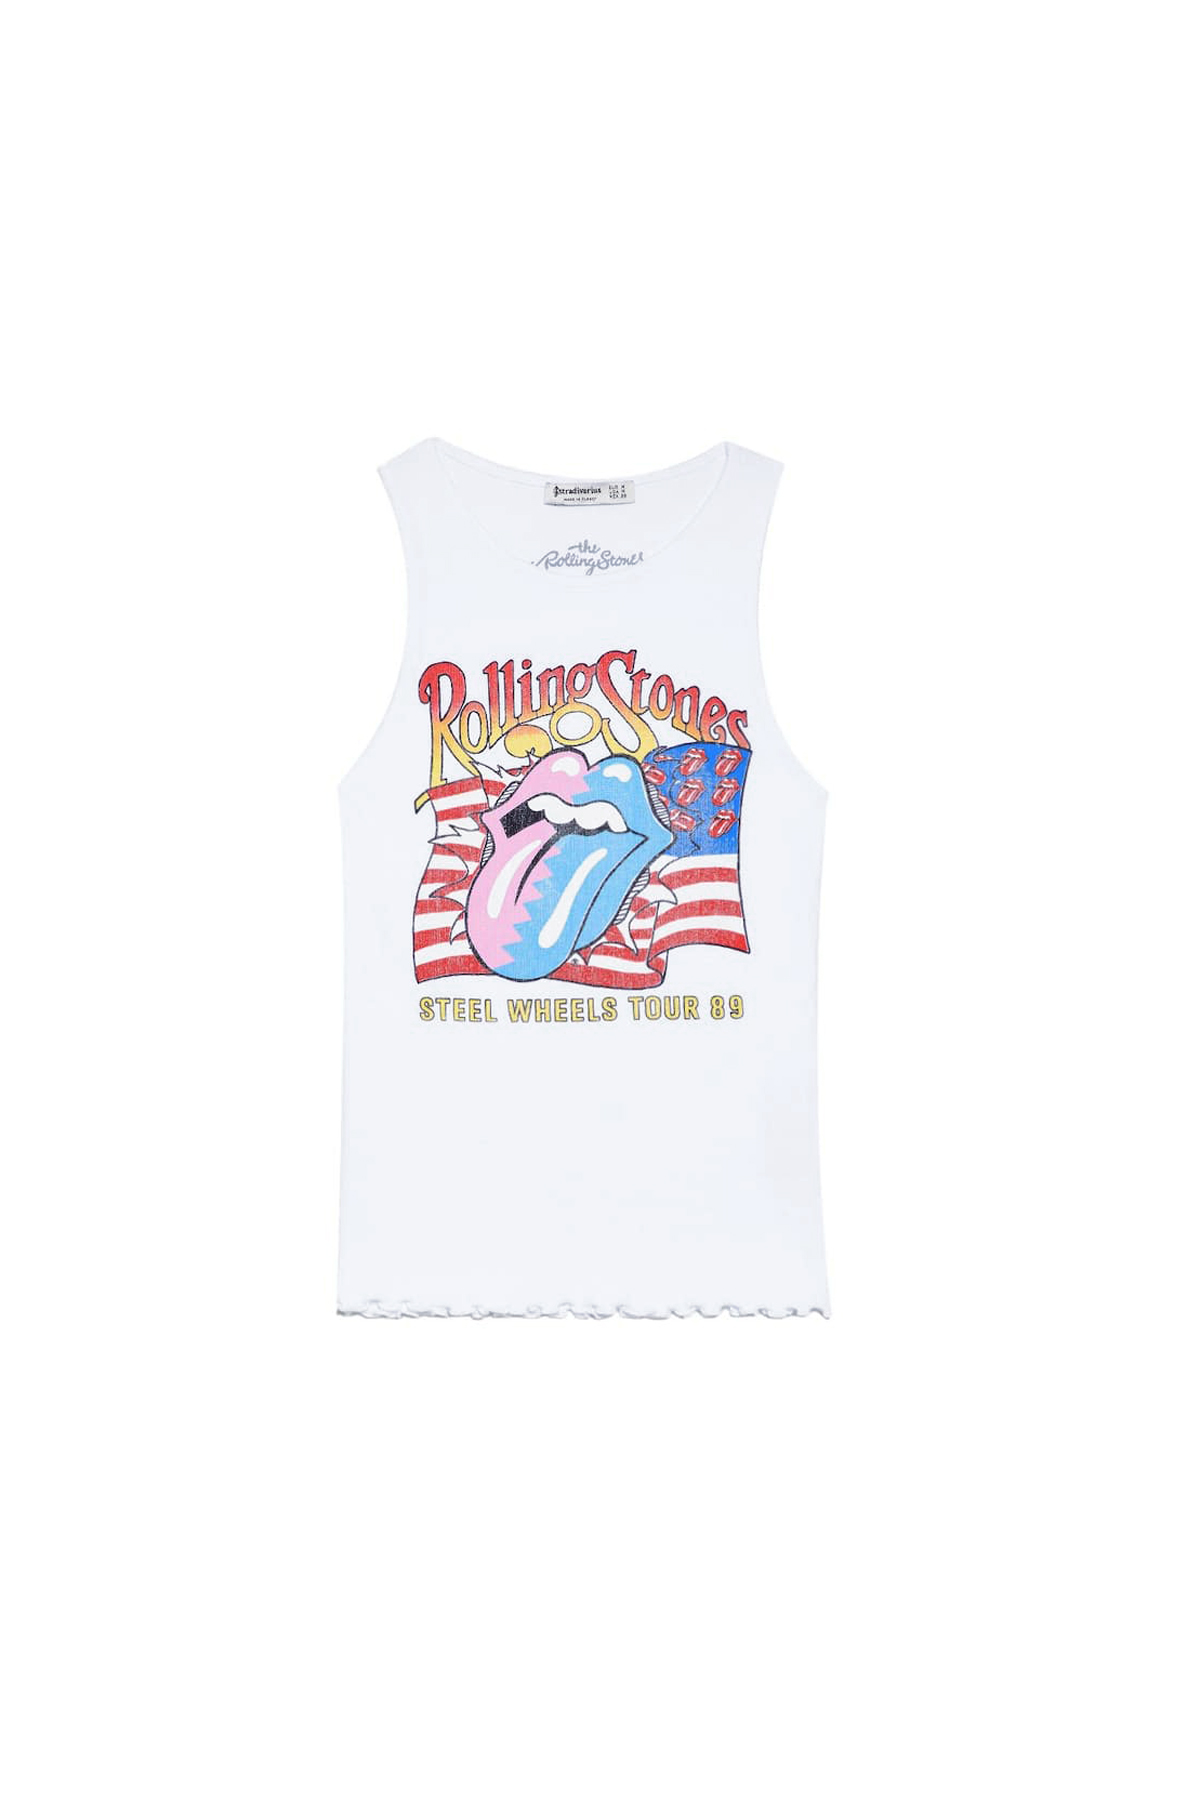 T-shirt-de-alças-dos-Rolling-Stones,-Stradivarius,-€12.99